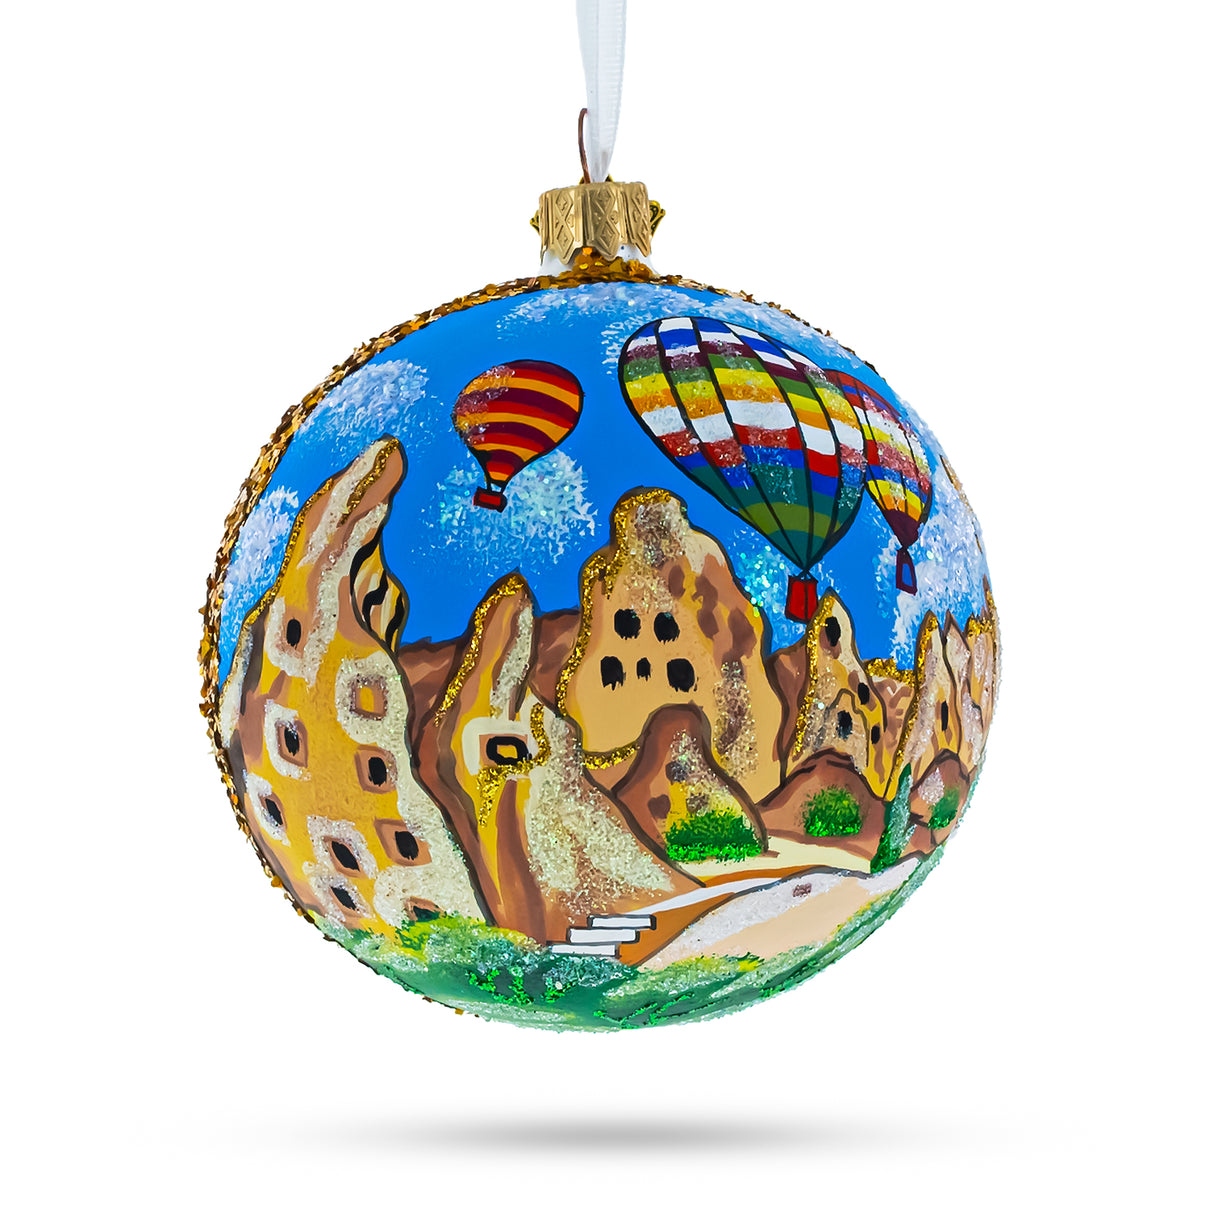 Cappadocia, Turkey Glass Ball Ornament 4 Inches in Multi color, Round shape